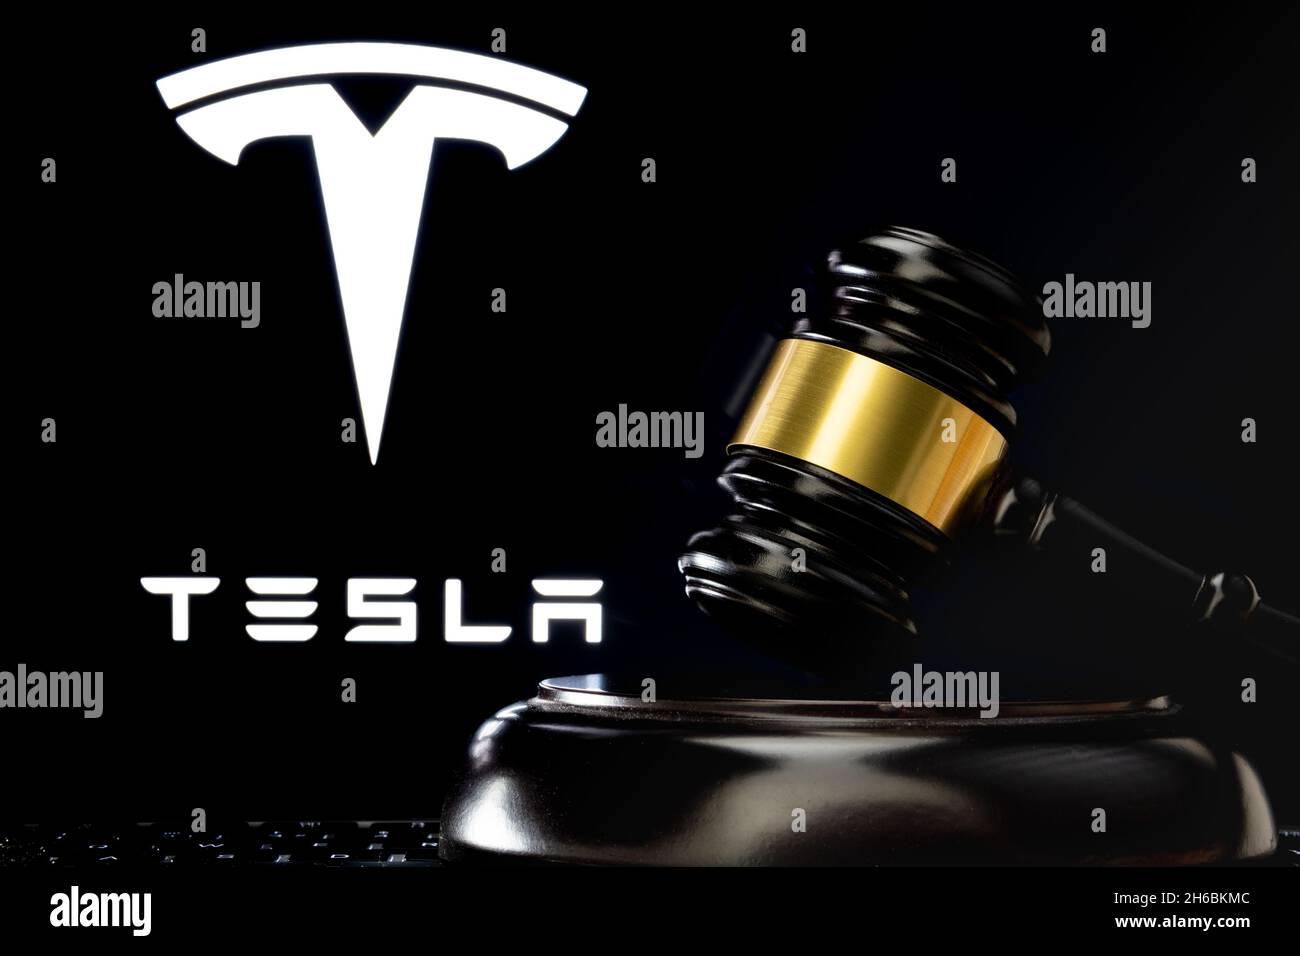 Le gavel du juge devant et le logo flou de la société Tesla vu à l'écran derrière.Concept.Stafford, Royaume-Uni, 14 novembre 2021. Banque D'Images